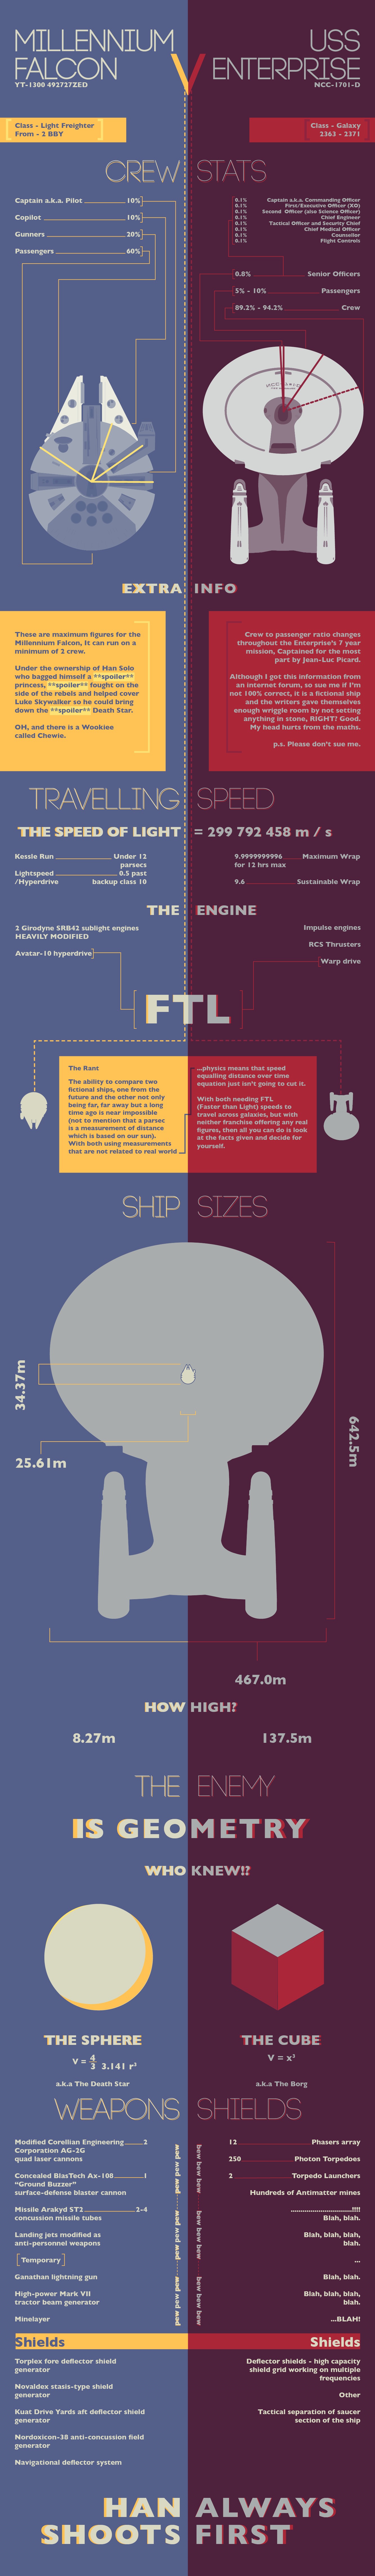 millenium_falcon_vs_uss_enterprise_infographic